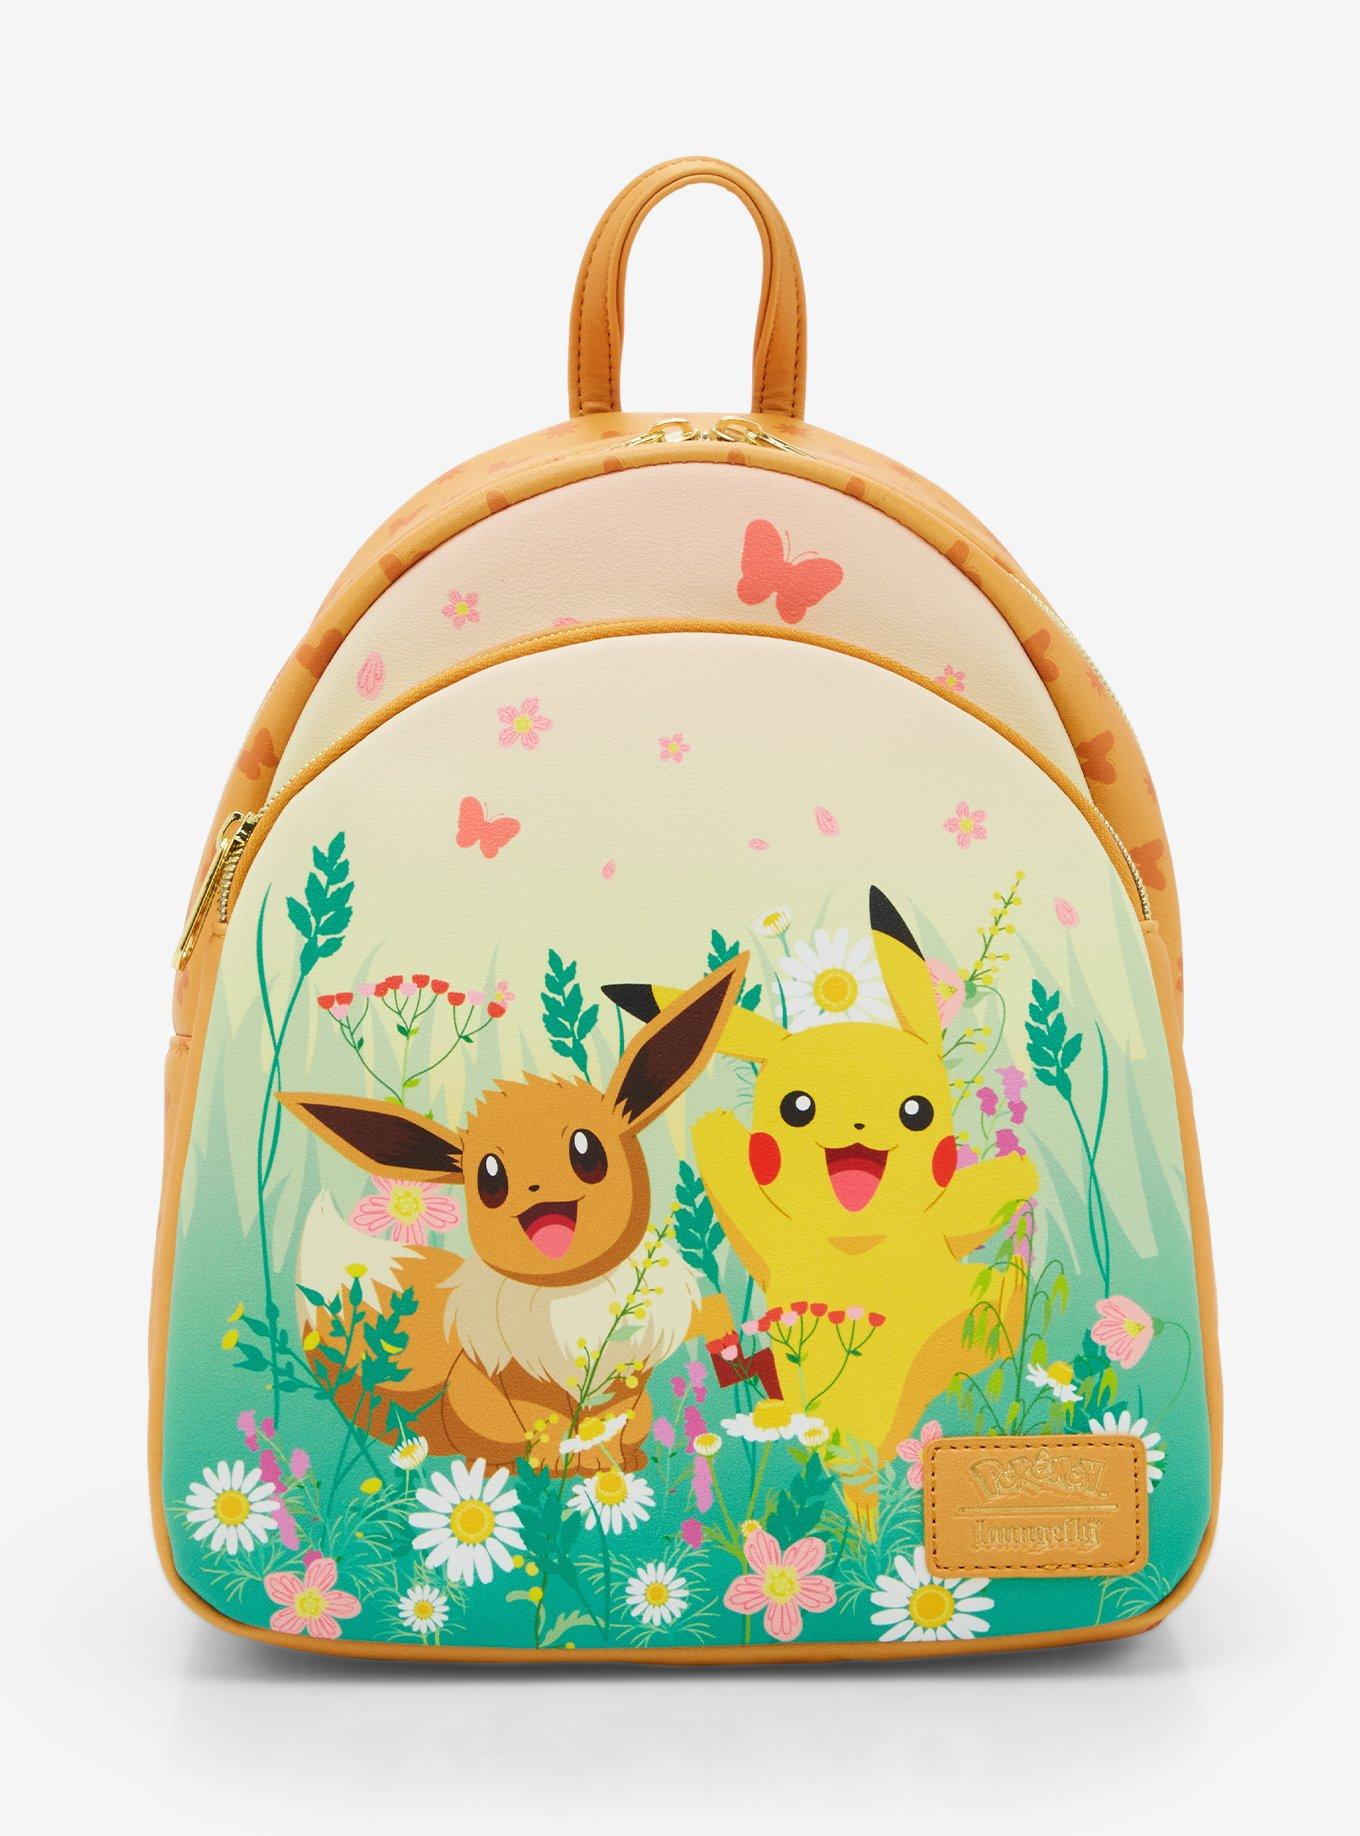 Pokemon Plush Coin Pouch Bag Charm